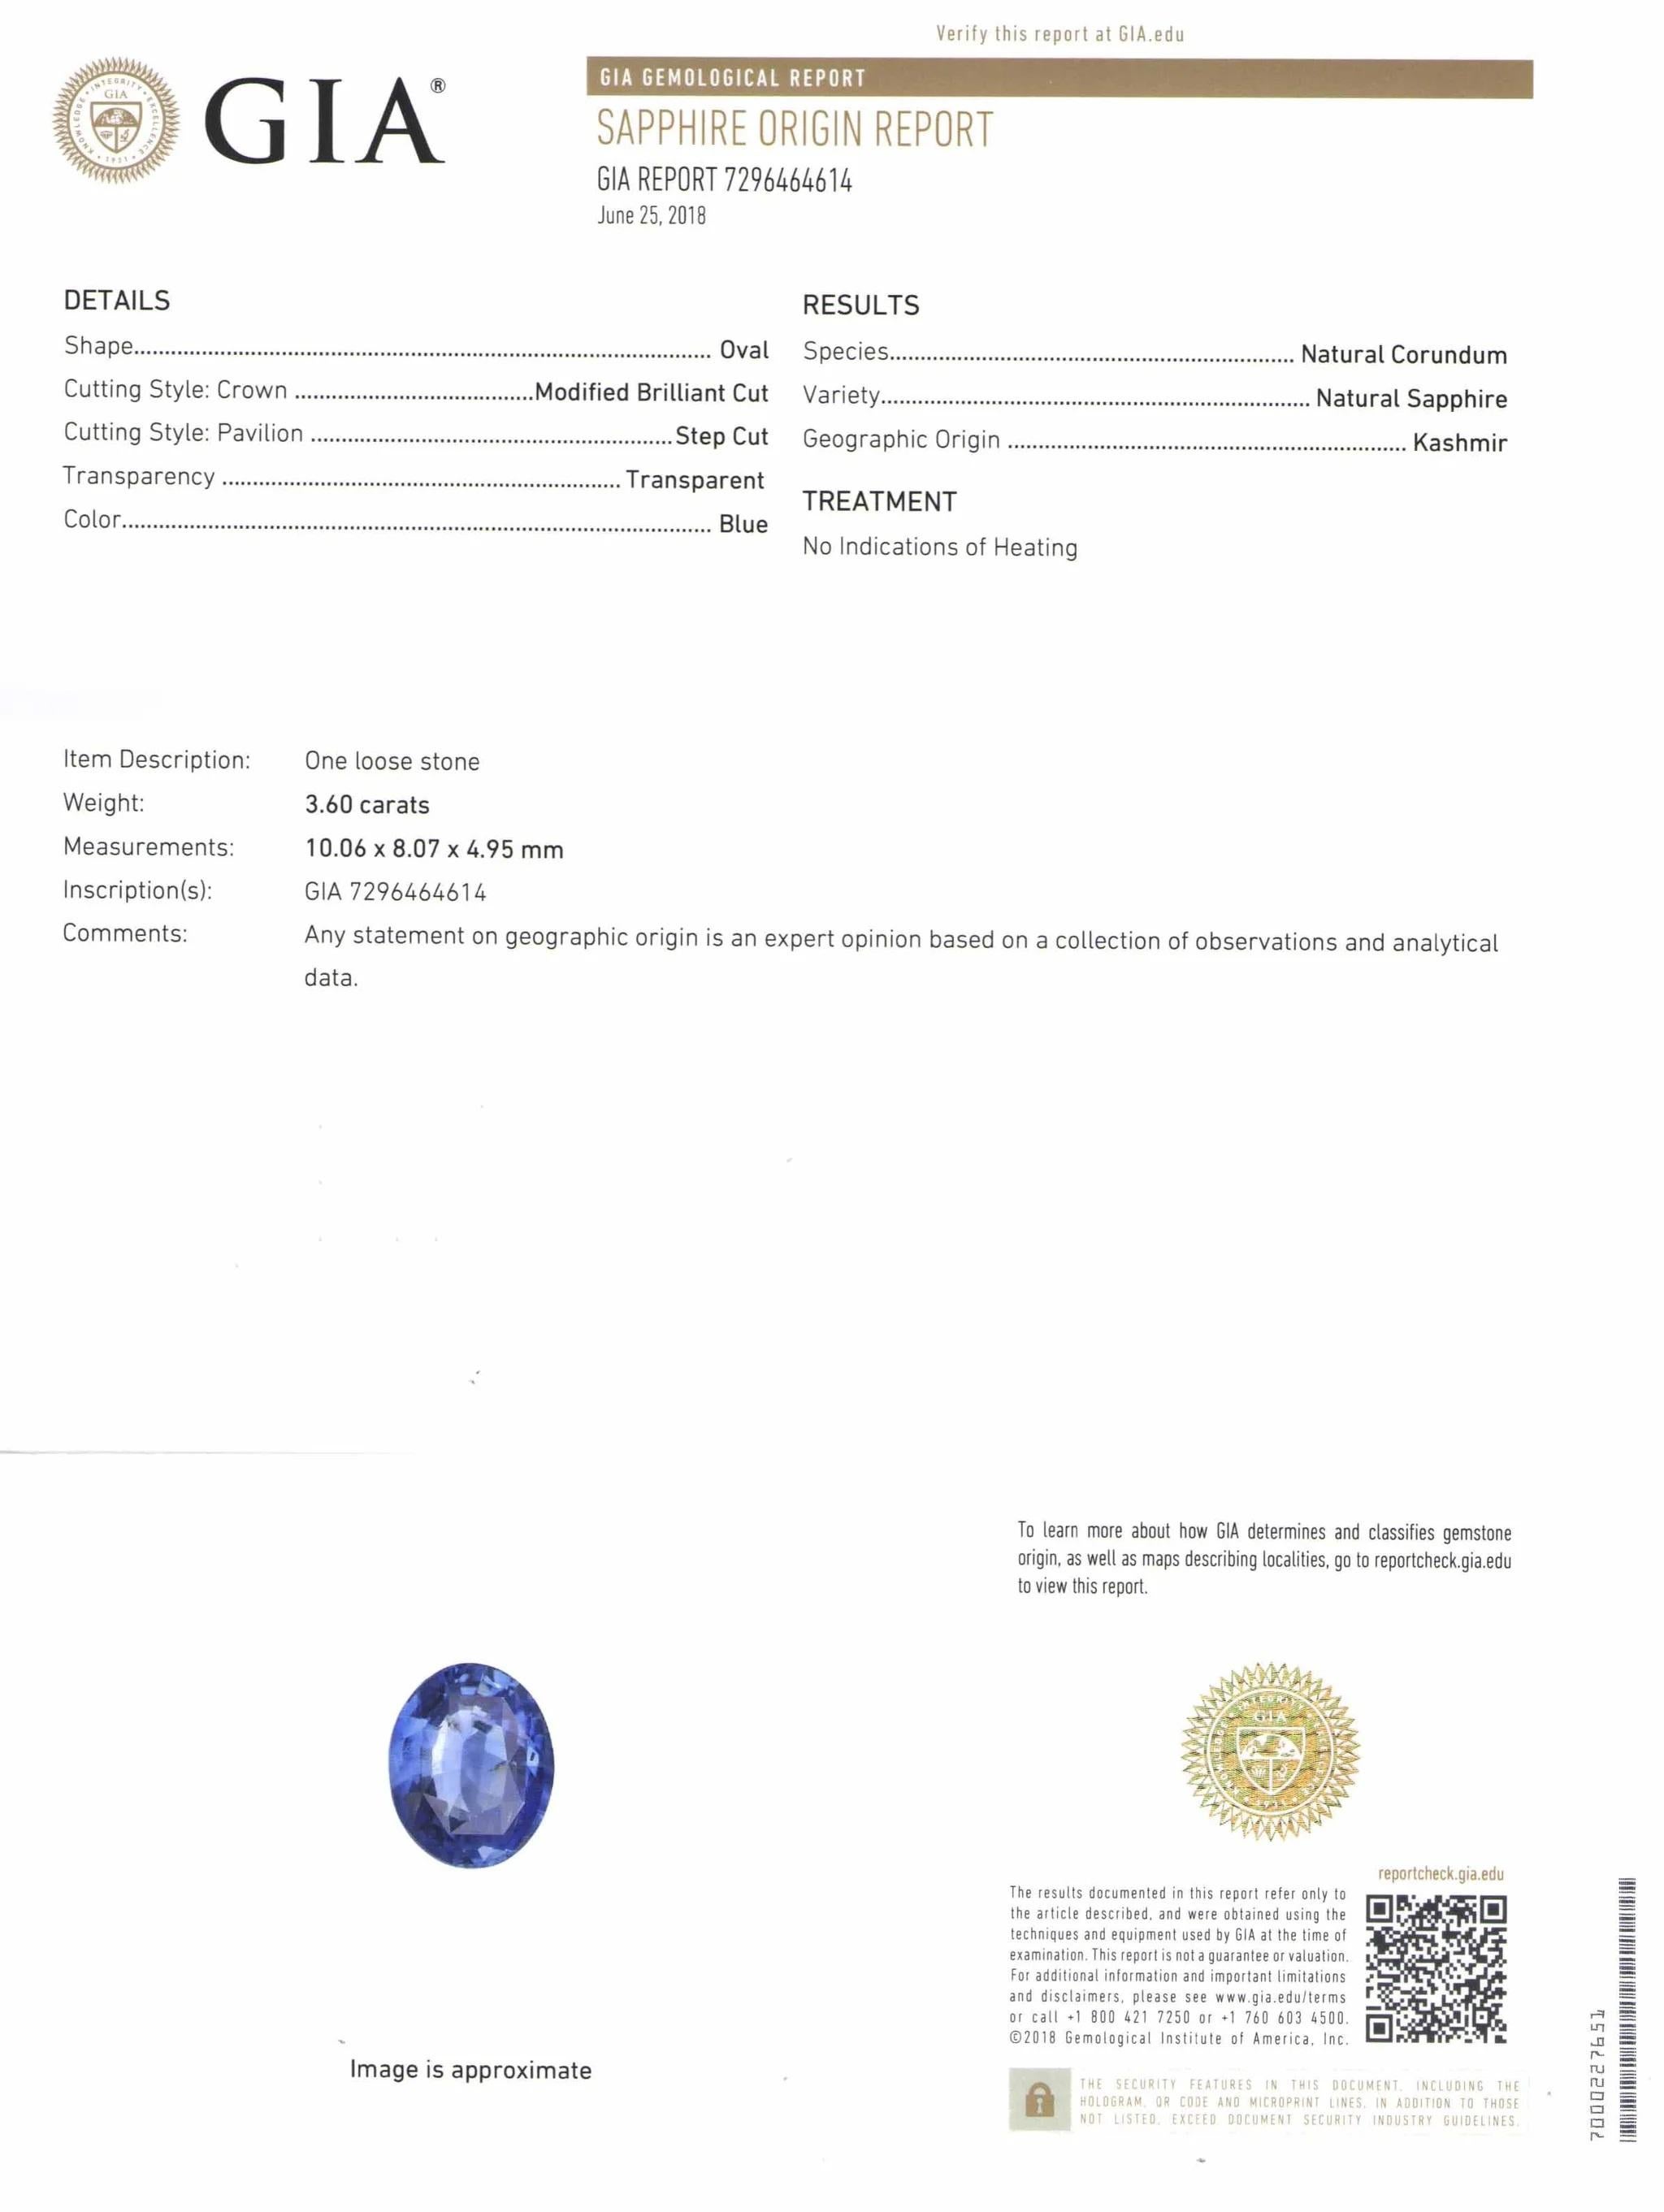 Moderne Bague saphir bleu Cachemire certifié GIA GRS IGI de 3,60 carats, sans chaleur en vente